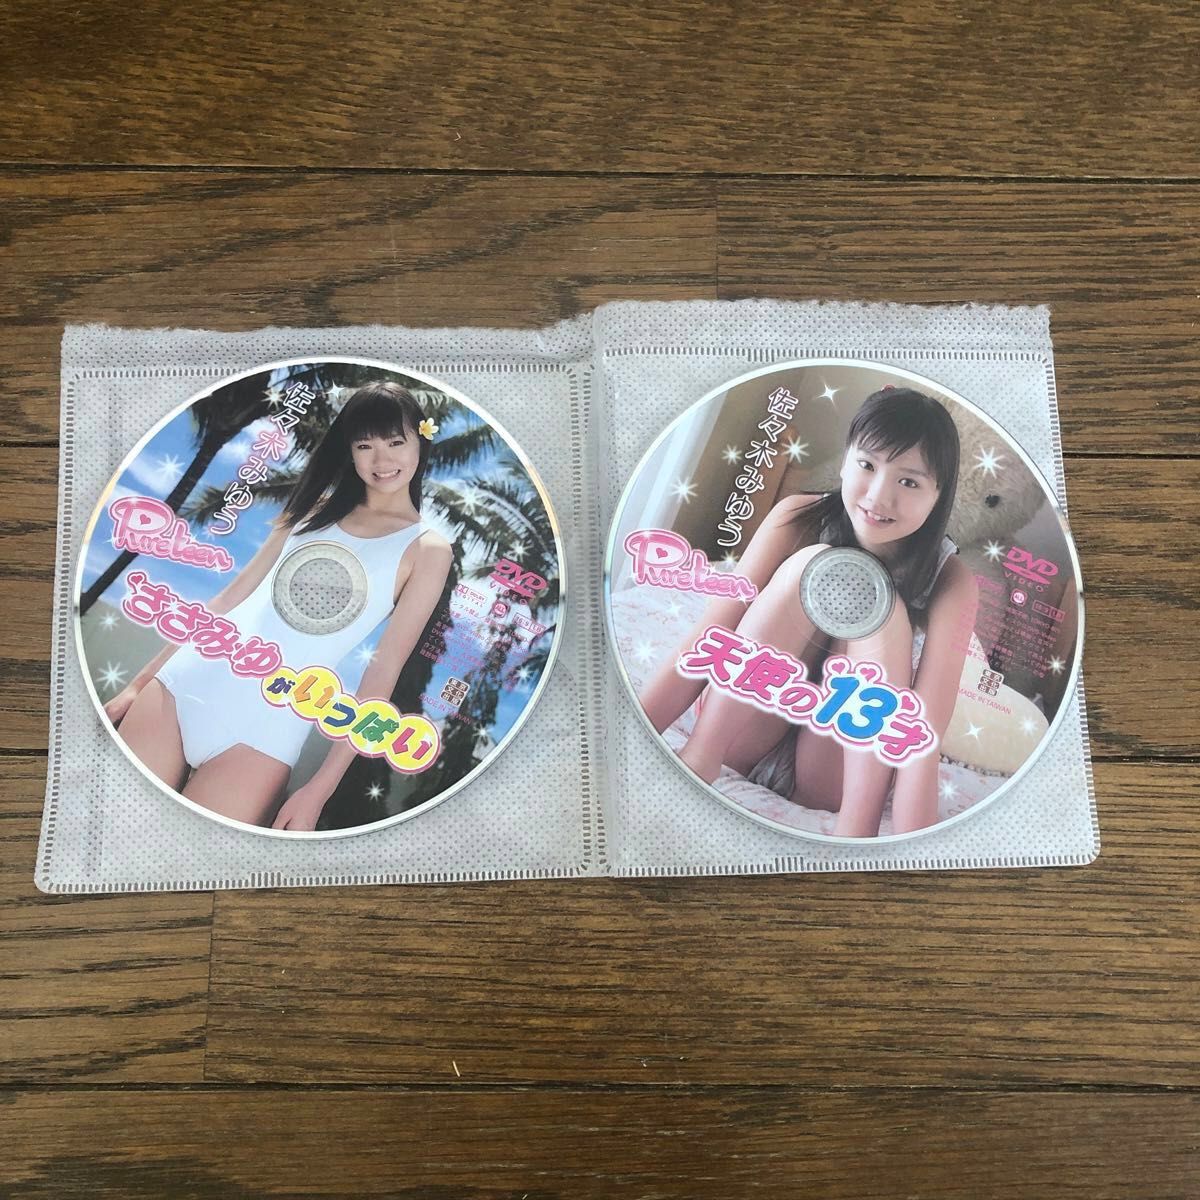 中古DVD盤のみ 2枚まとめて出品 グラビア 佐々木みゆう ささみゆがいっぱい と 天使の１３歳  pure teen  映像作品